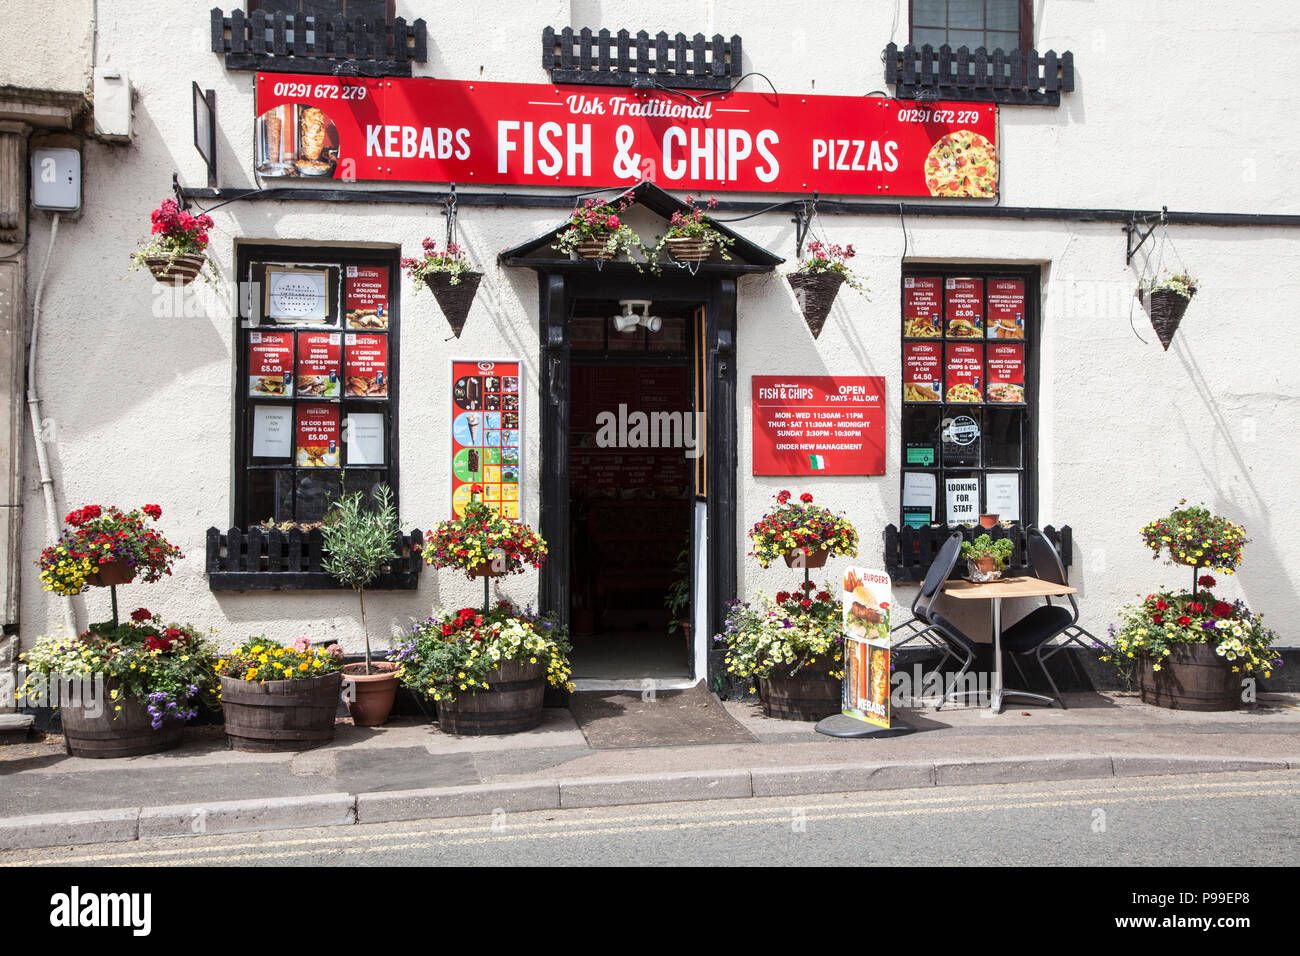 L'Usk Poisson et Chip shop, dans le sud du Pays de Galles, Royaume-Uni Banque D'Images